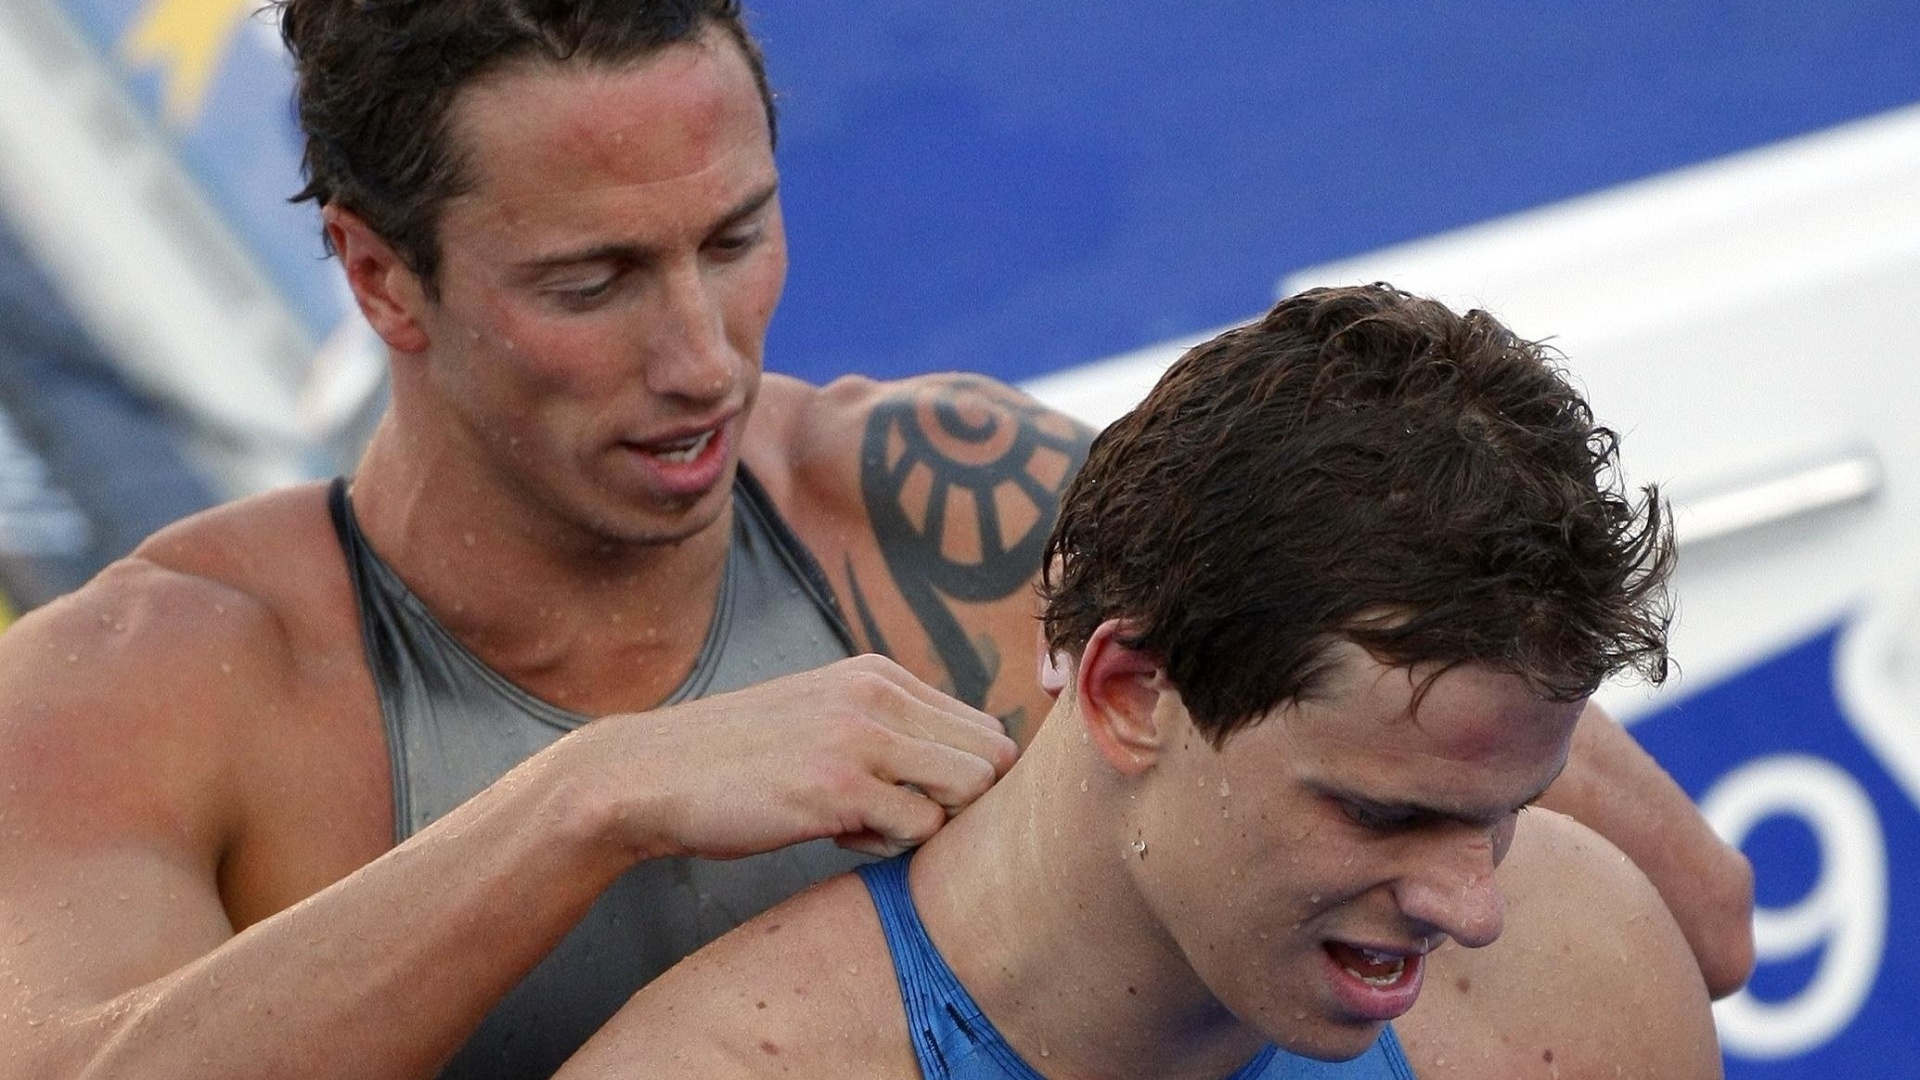 Fred Bousquet e Cesar Cielo juntos no Mundial de Esportes Aquáticos de Roma, em 2009